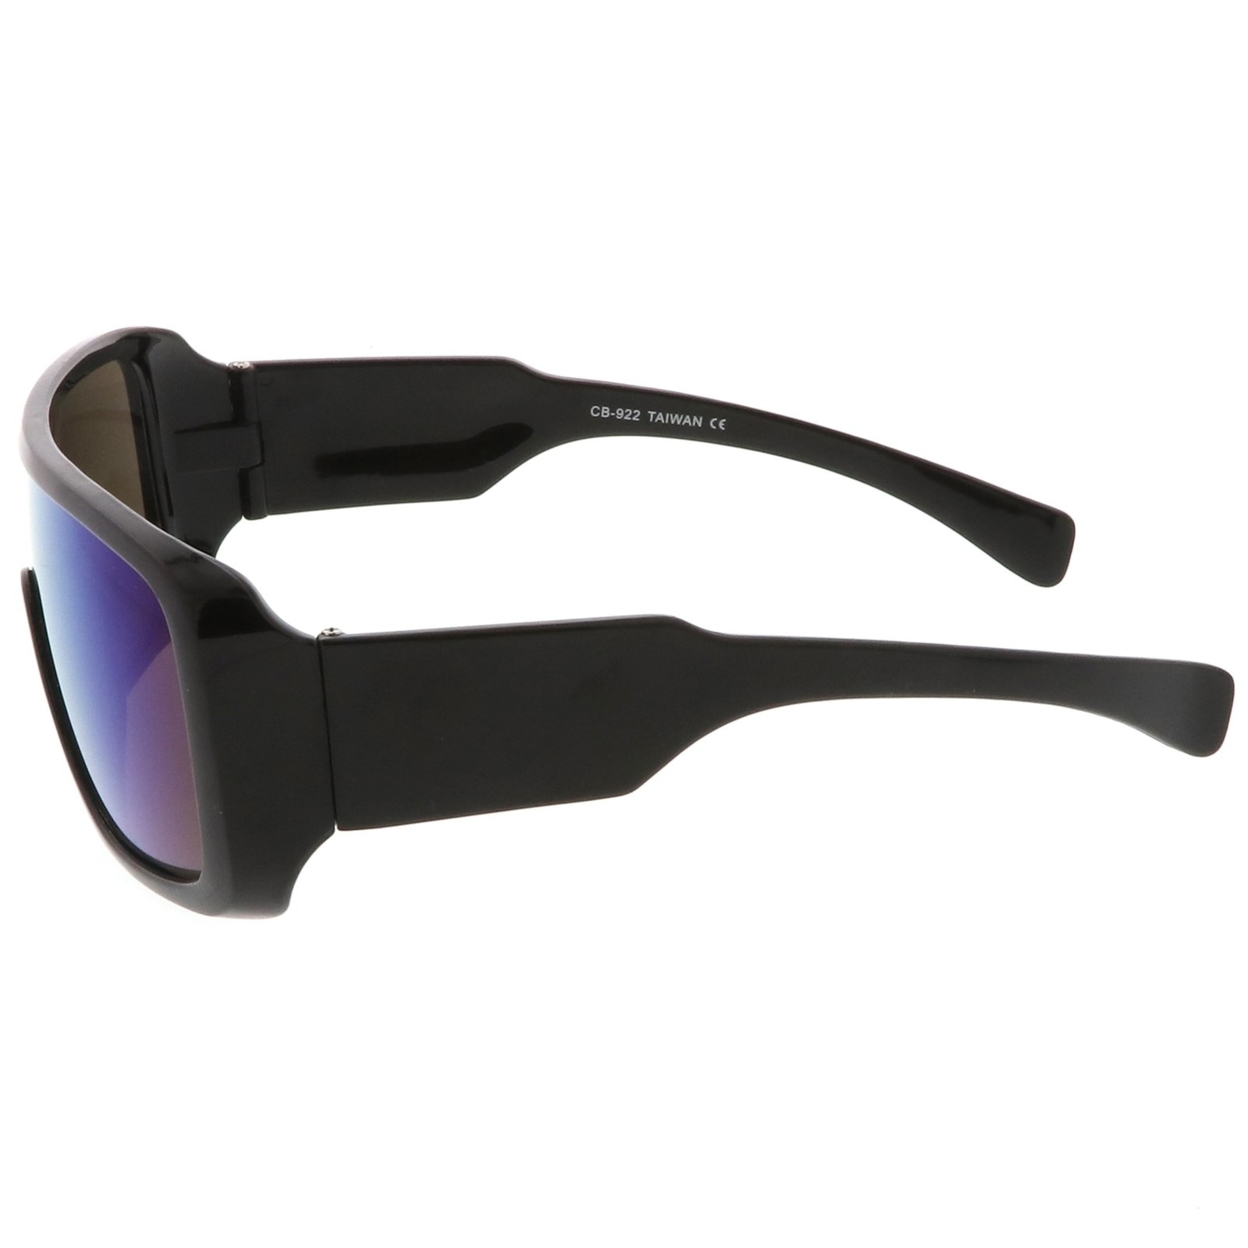 Men's Oversize Goggle Colored Mirror Mono Lens Shield Sunglasses 60mm - Black / Green-Purple Mirror